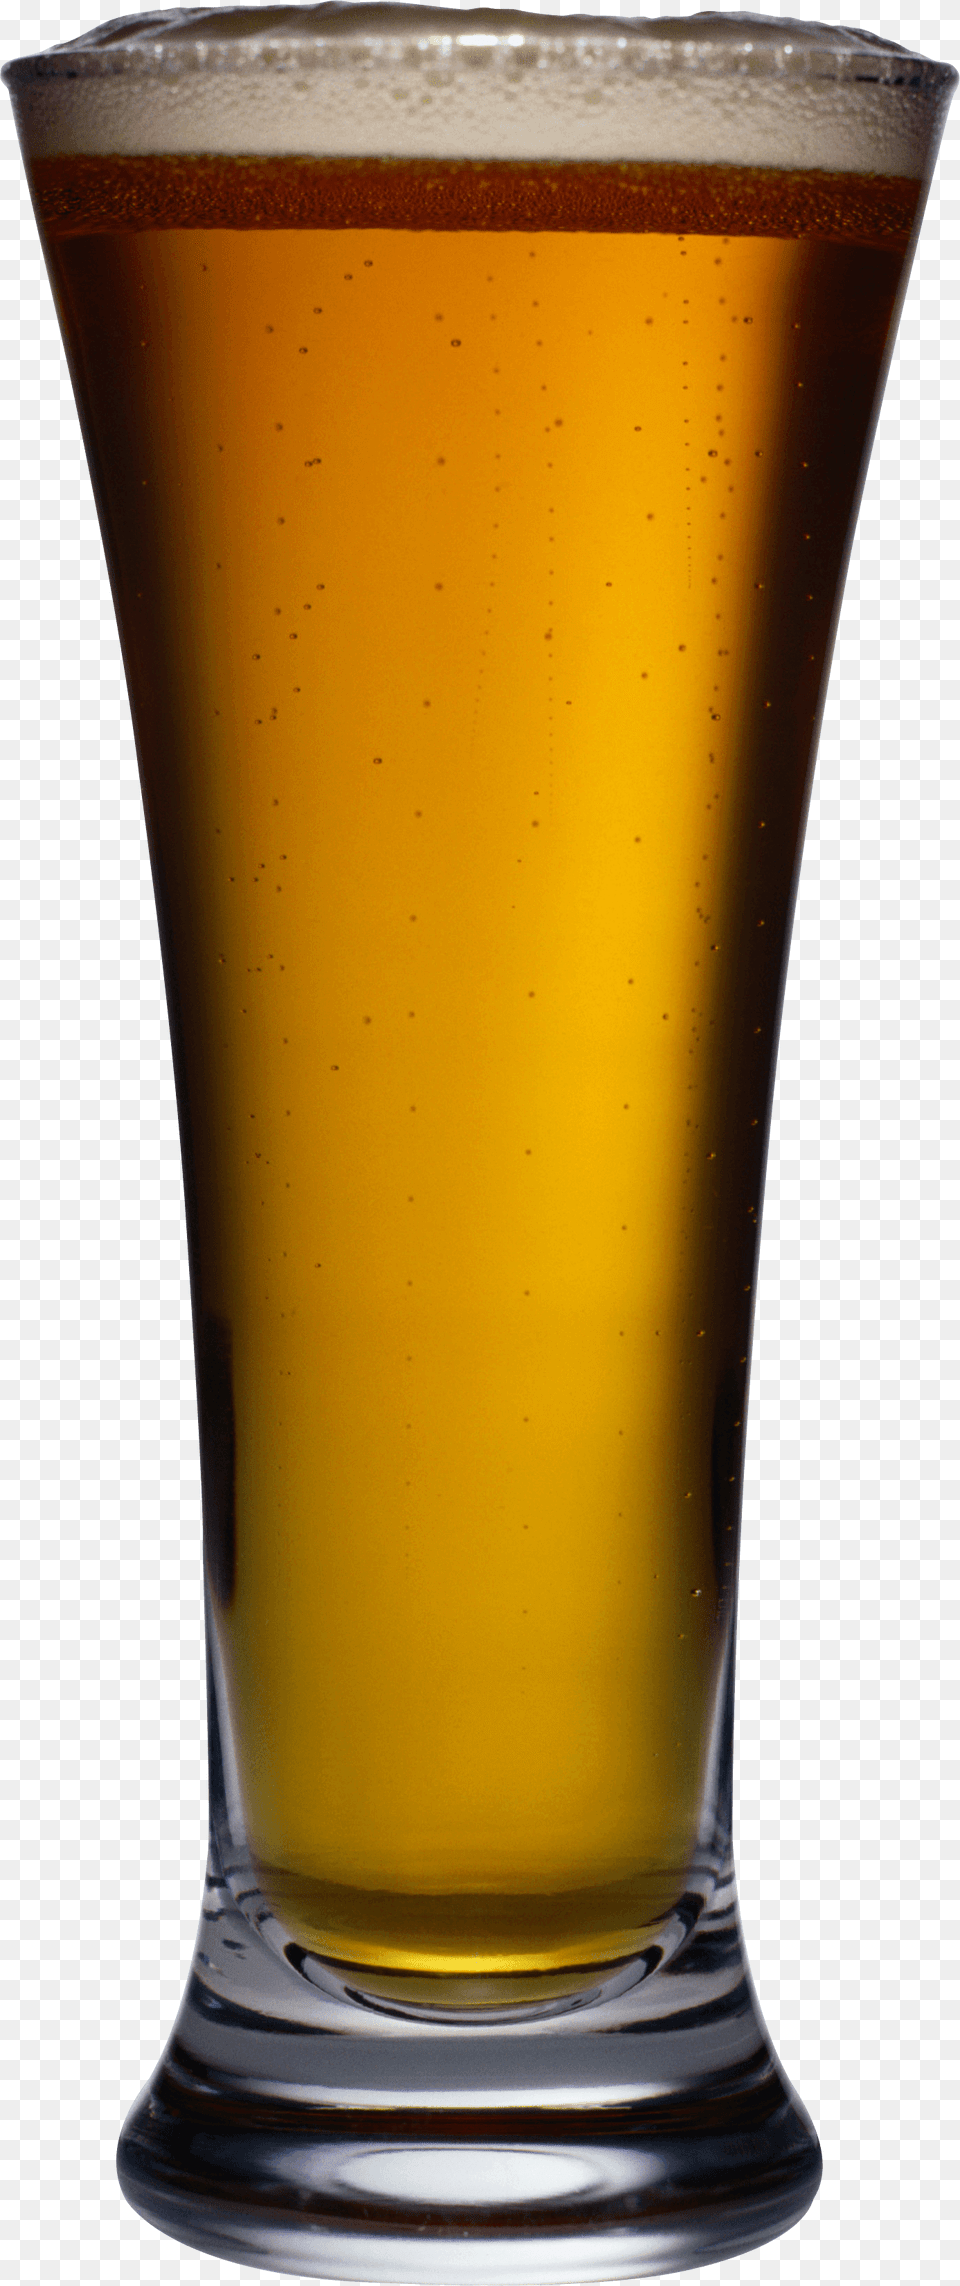 Goblet Beer Image Hq Image Freepngimg, Alcohol, Beer Glass, Beverage, Glass Free Png Download